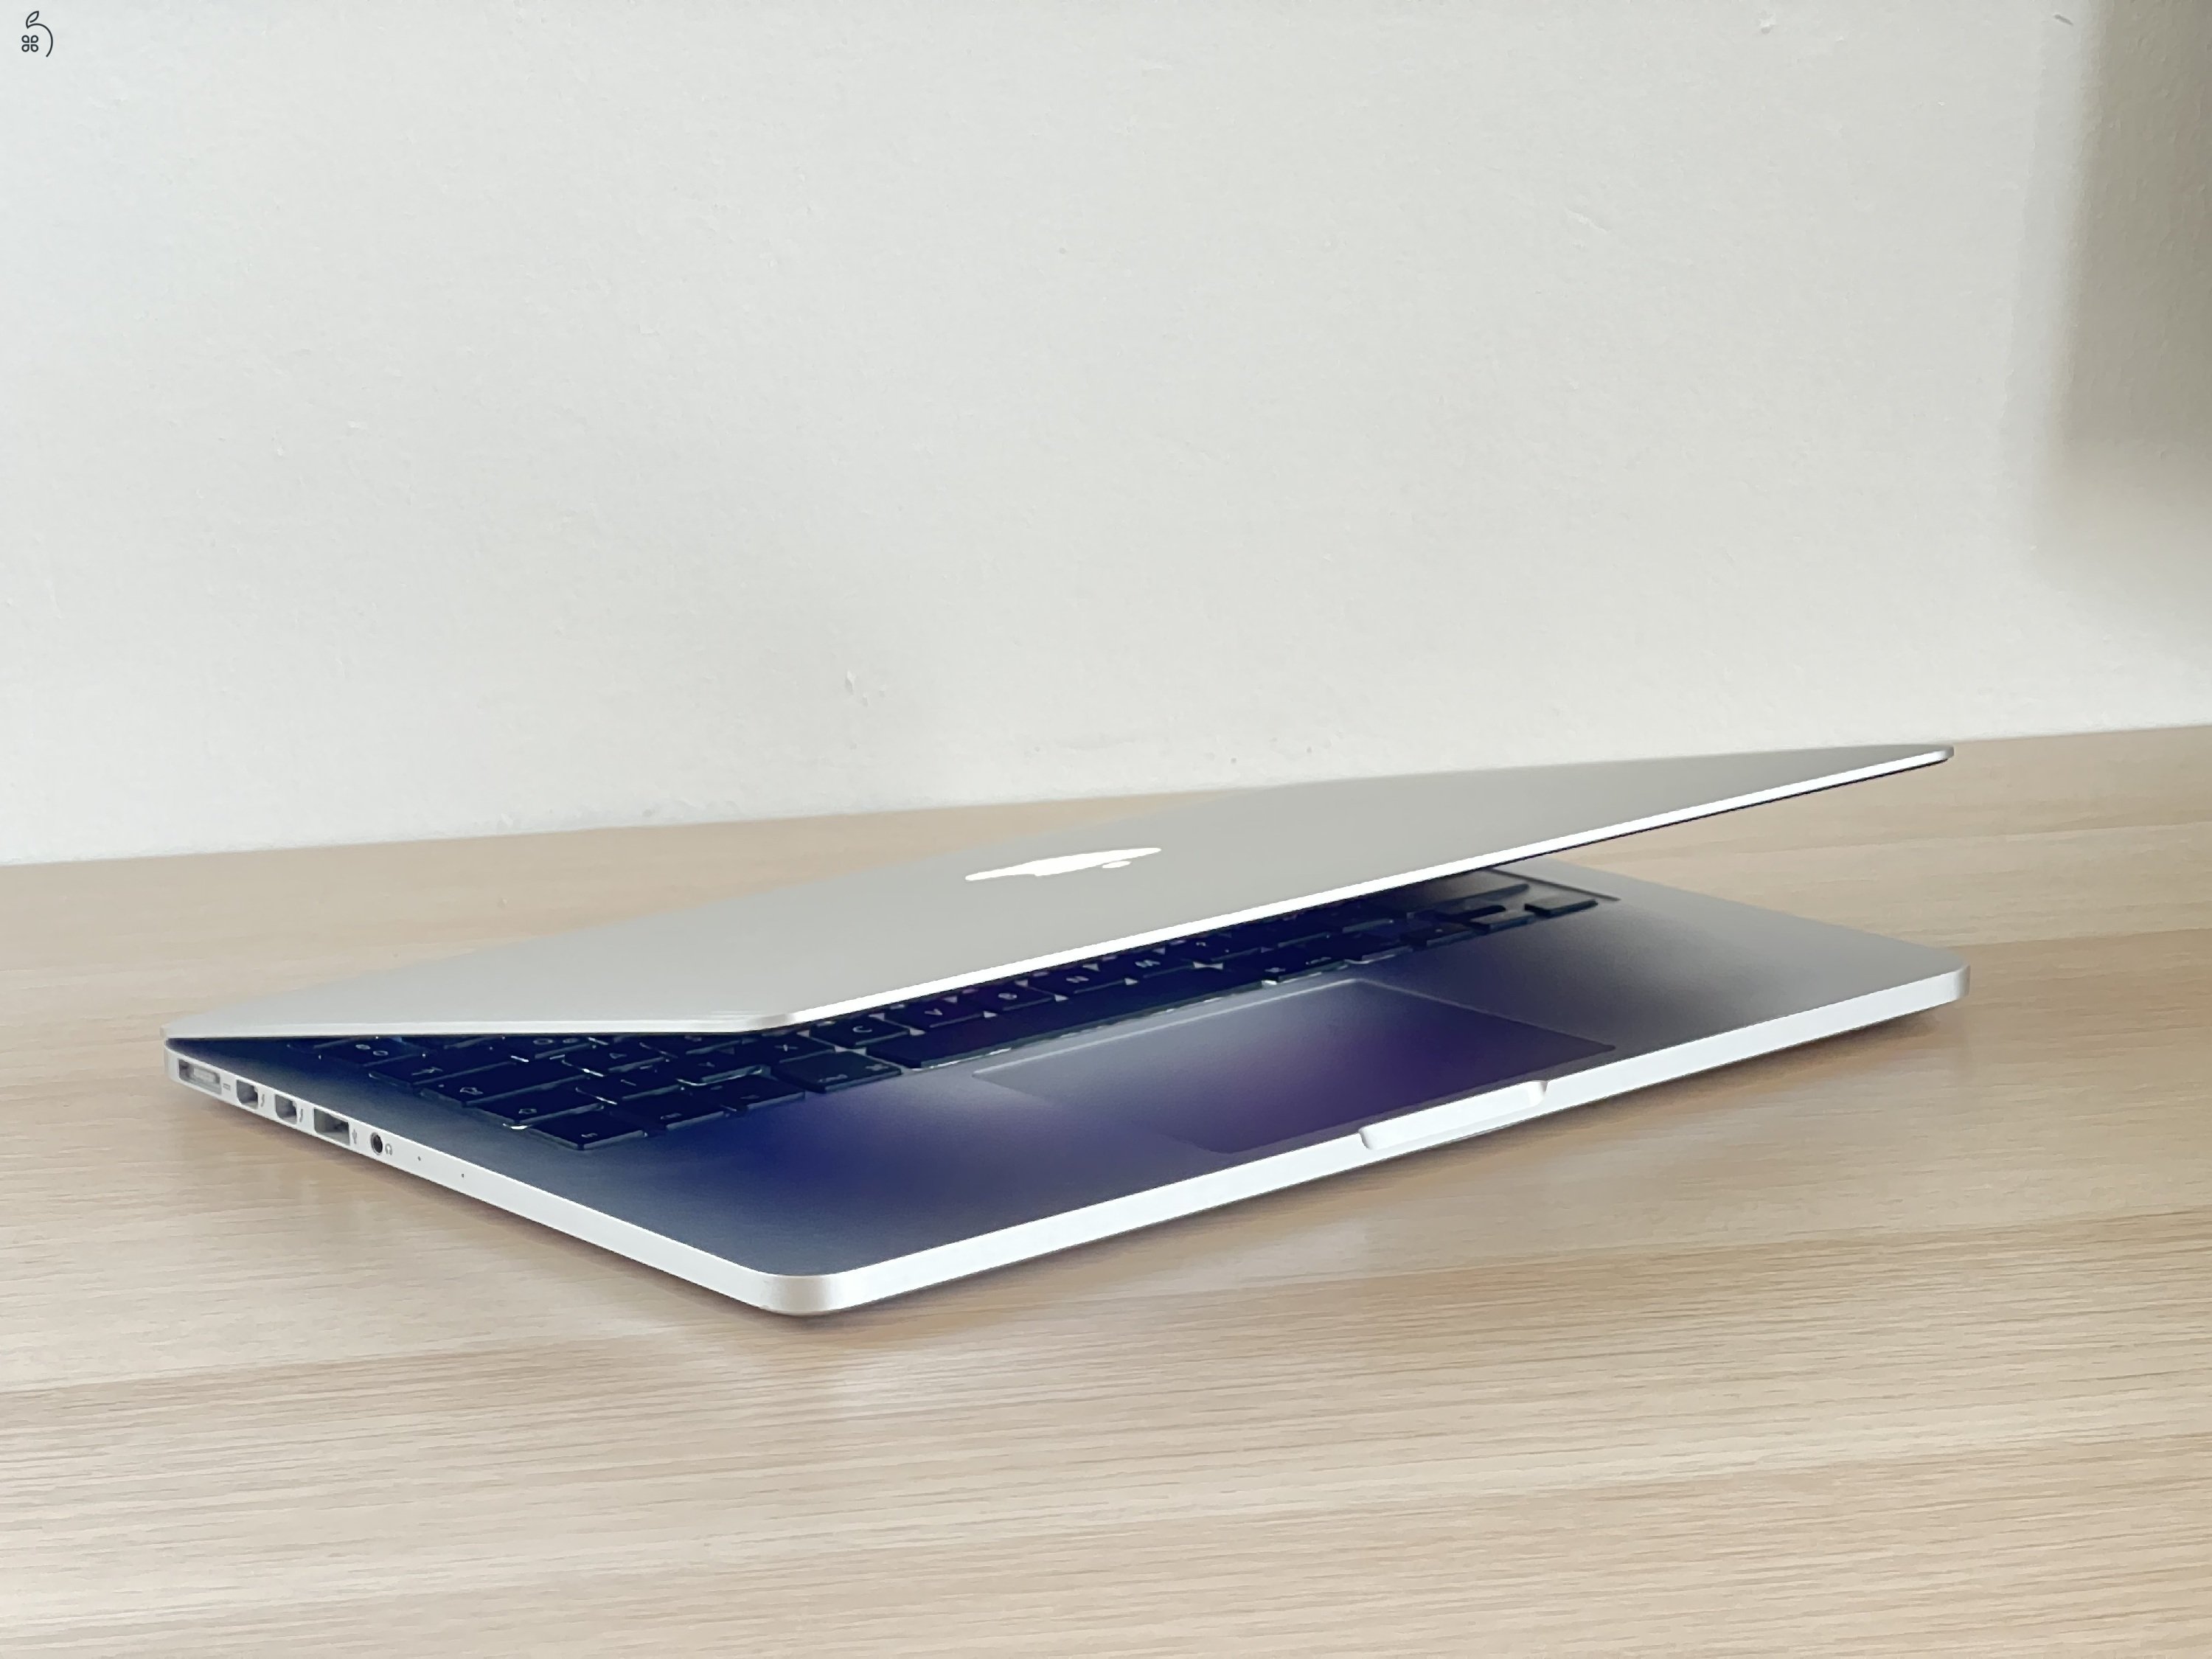 MacBook Pro 2014 CTO i5 16GB RAM 256GB SSD Intel Iris 1,5GB magyar